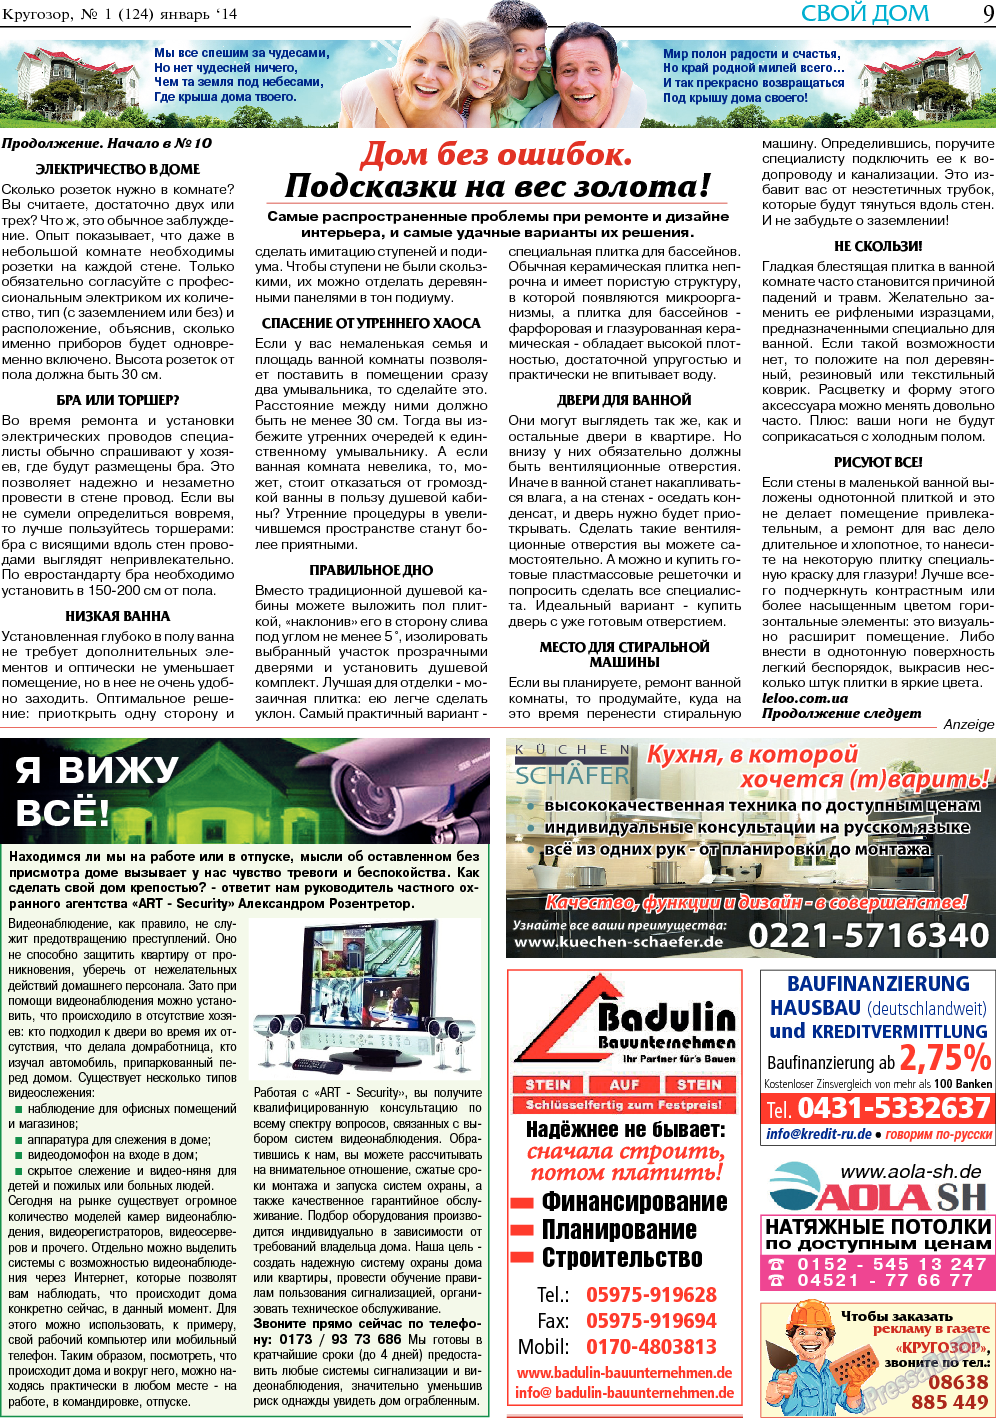 Кругозор, газета. 2014 №1 стр.9